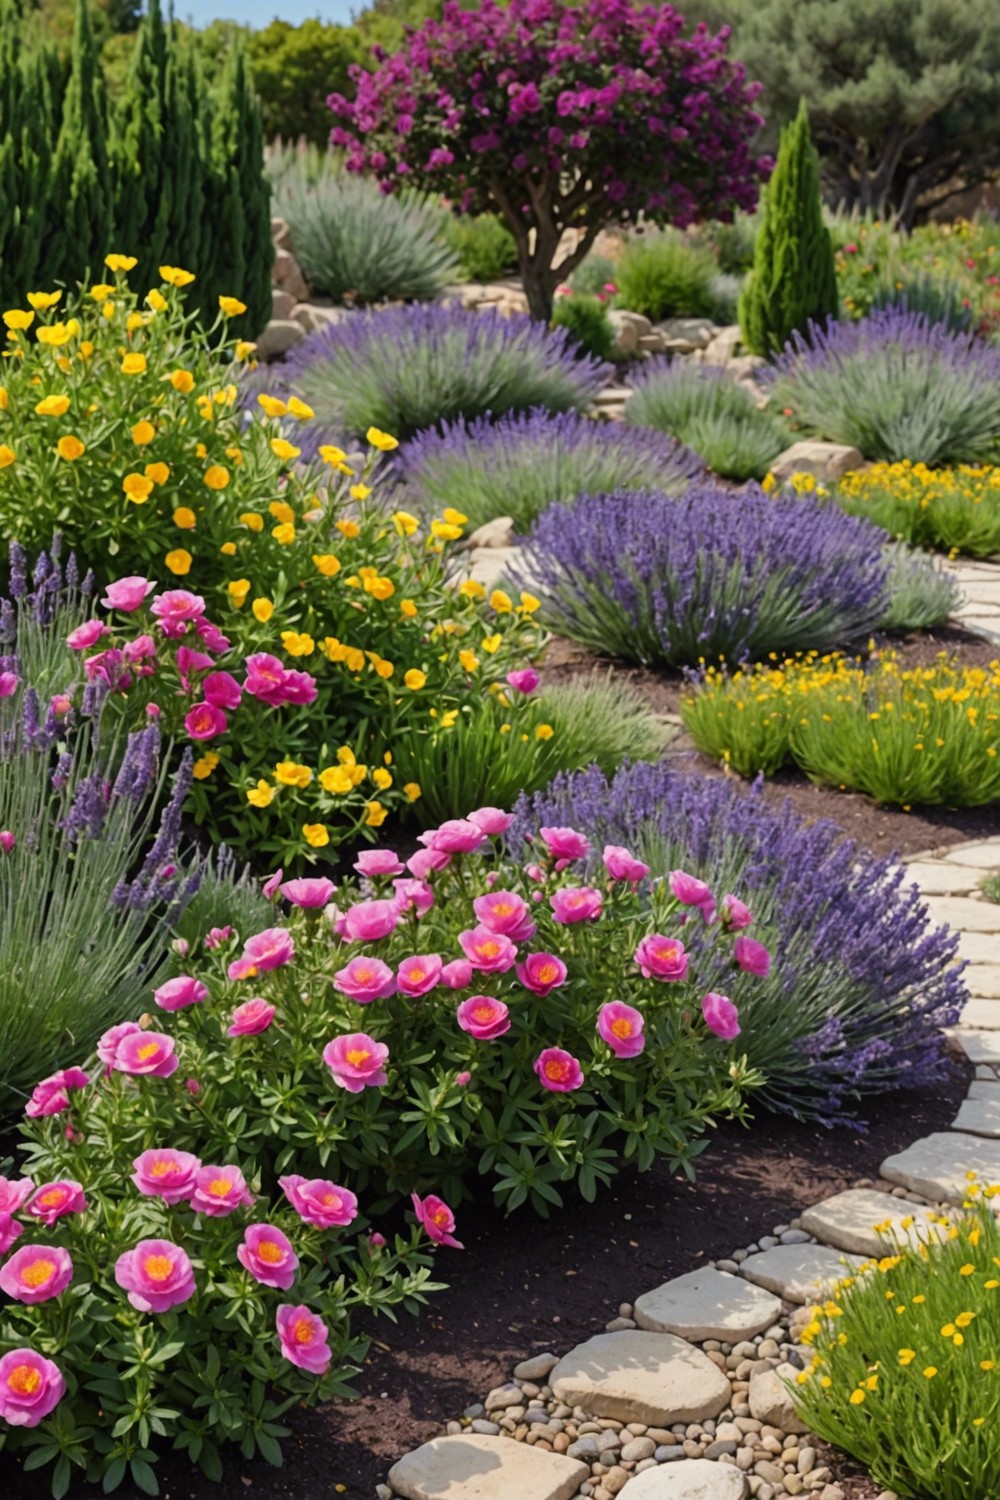 Rockrose and Lavender Plants